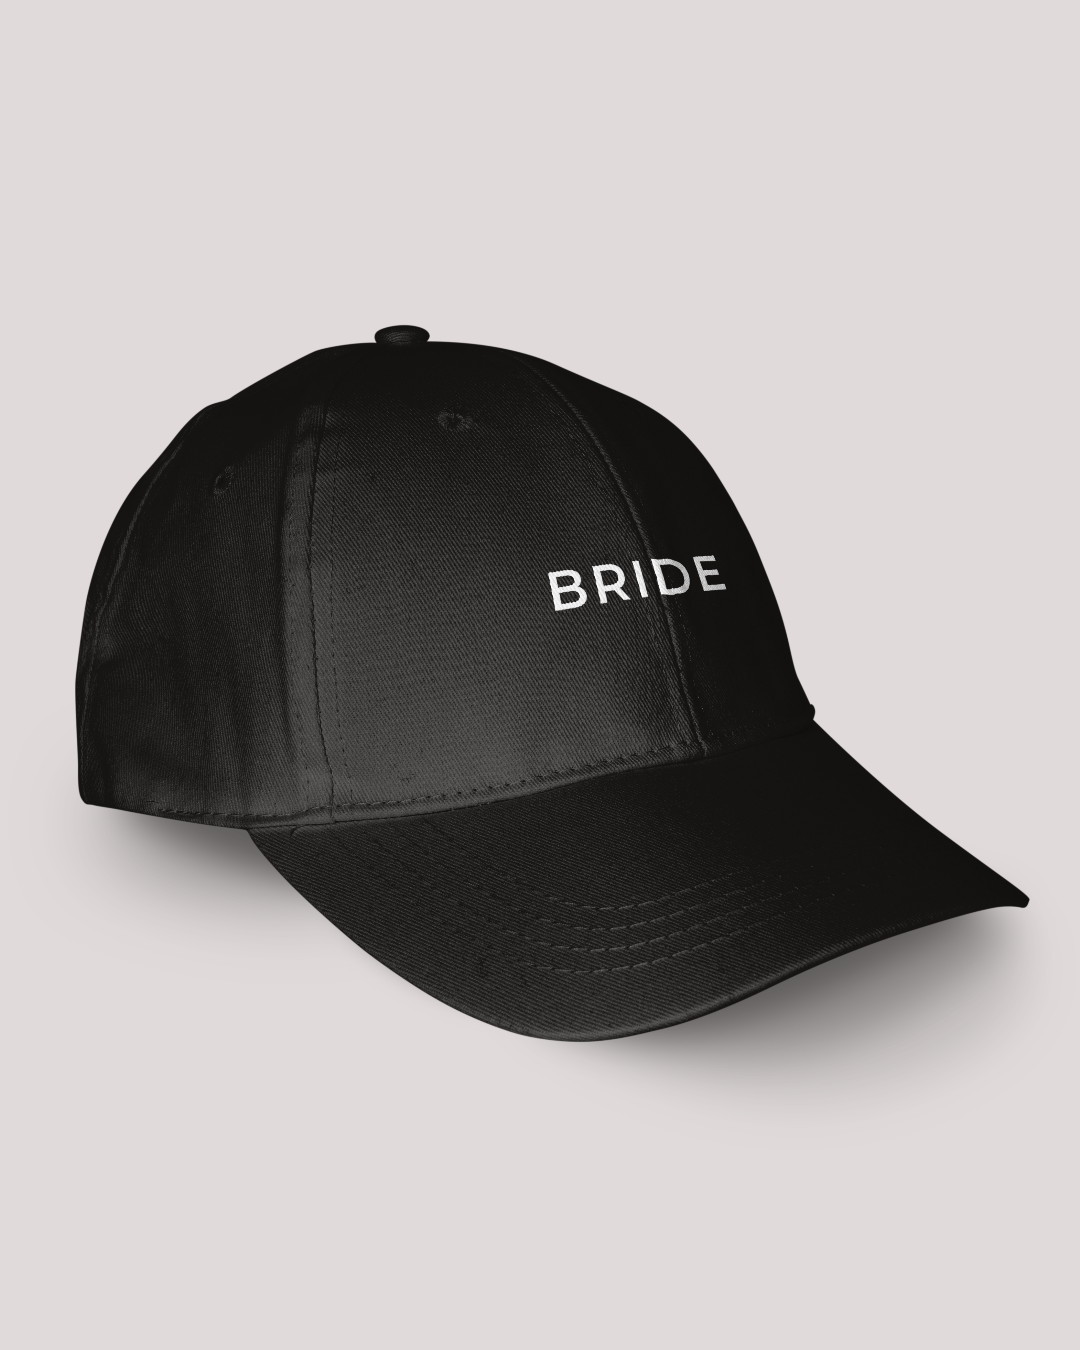 'BRIDE' Cap